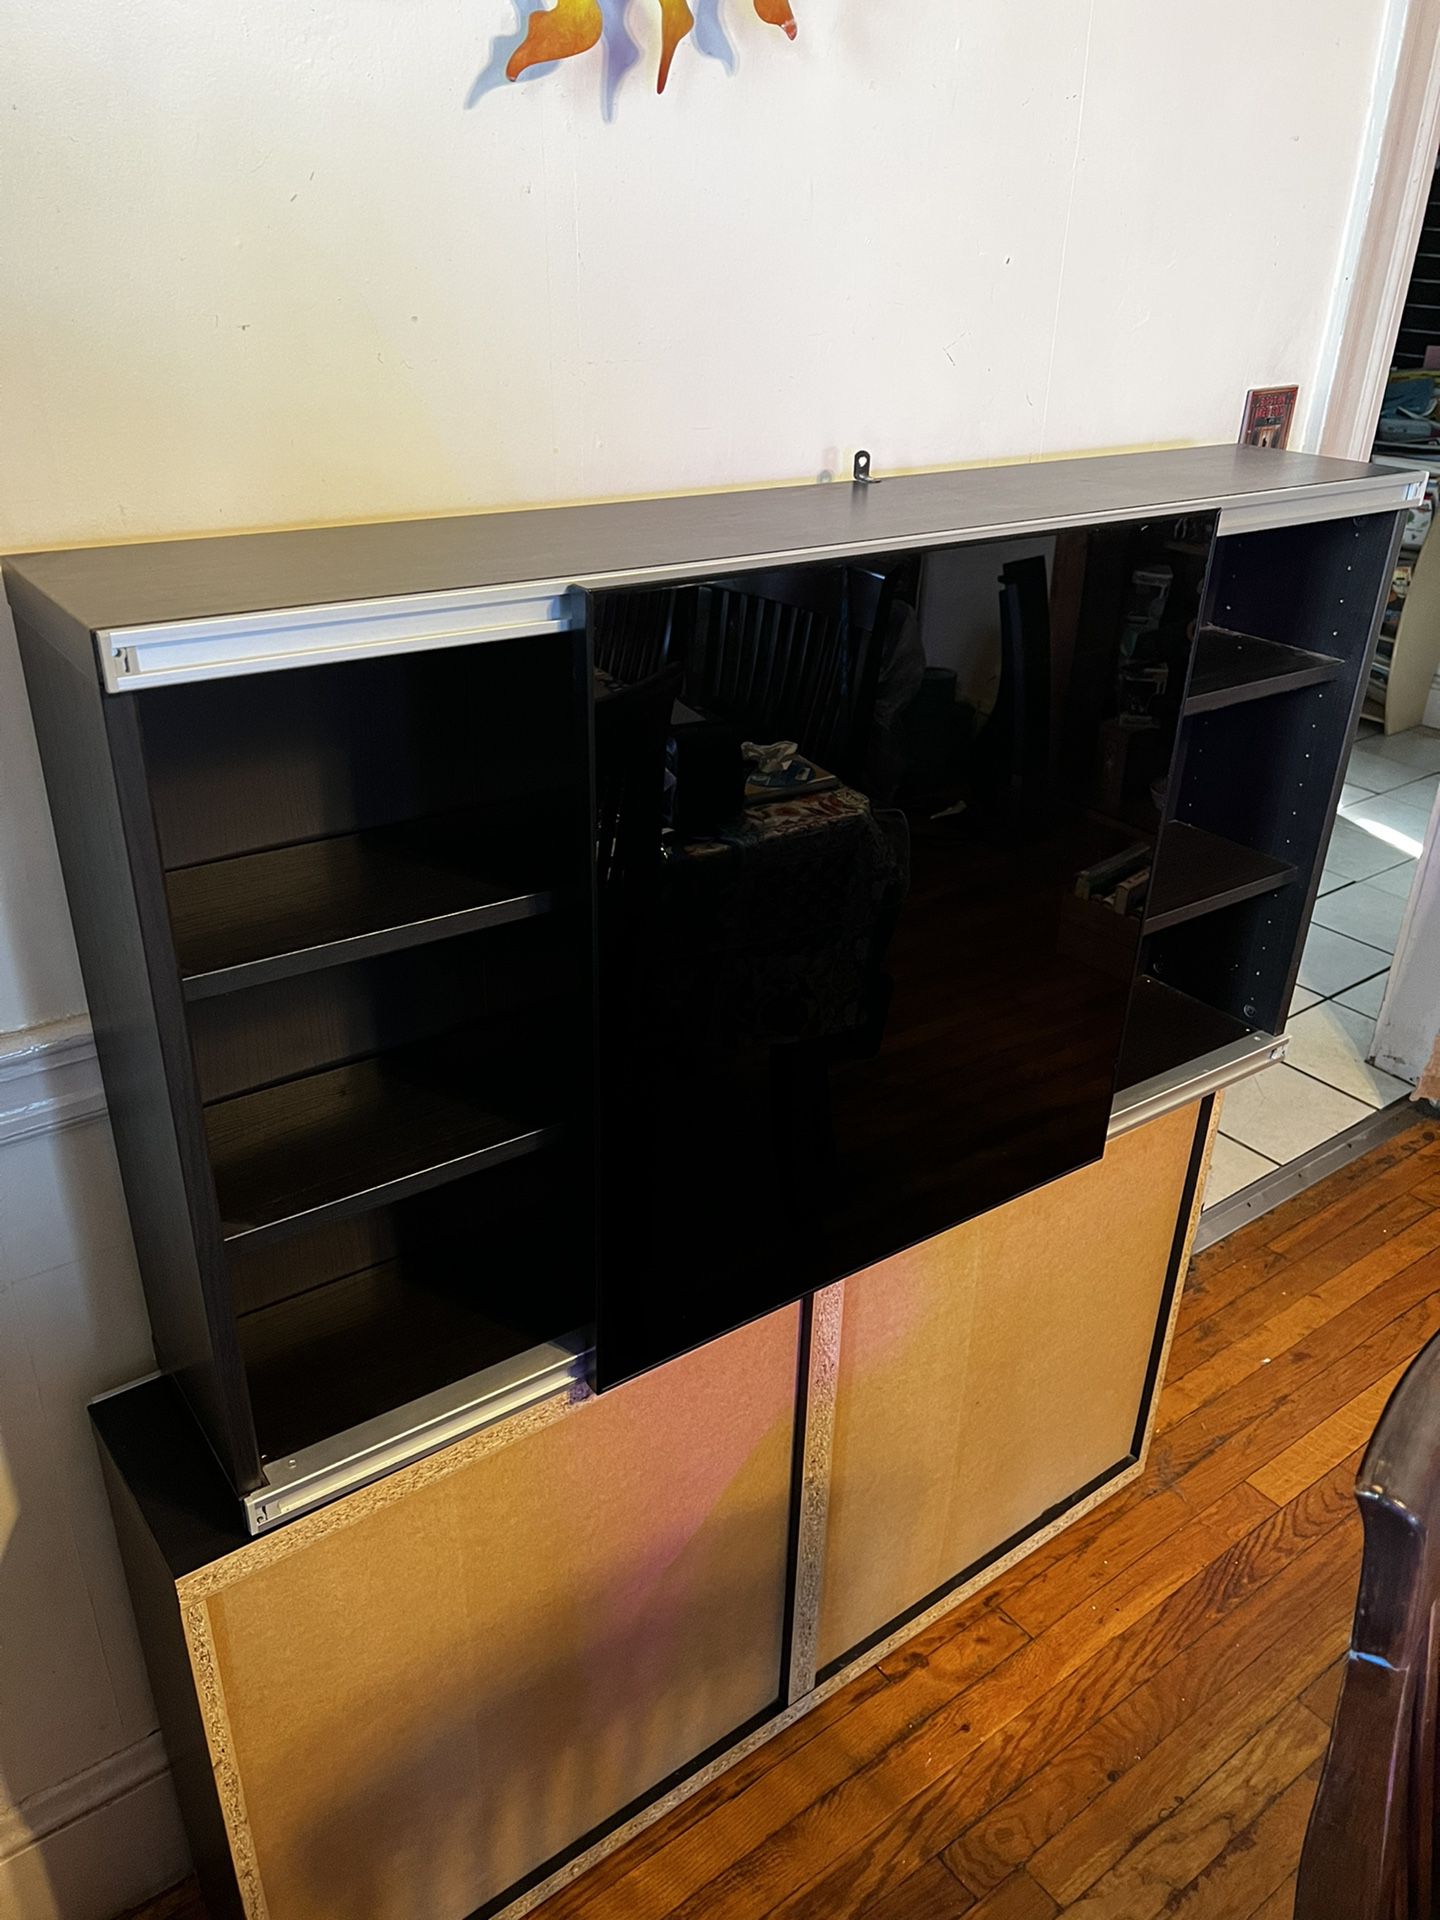 Ikea Glass Sliding Door Bookshelf -Can Deliver